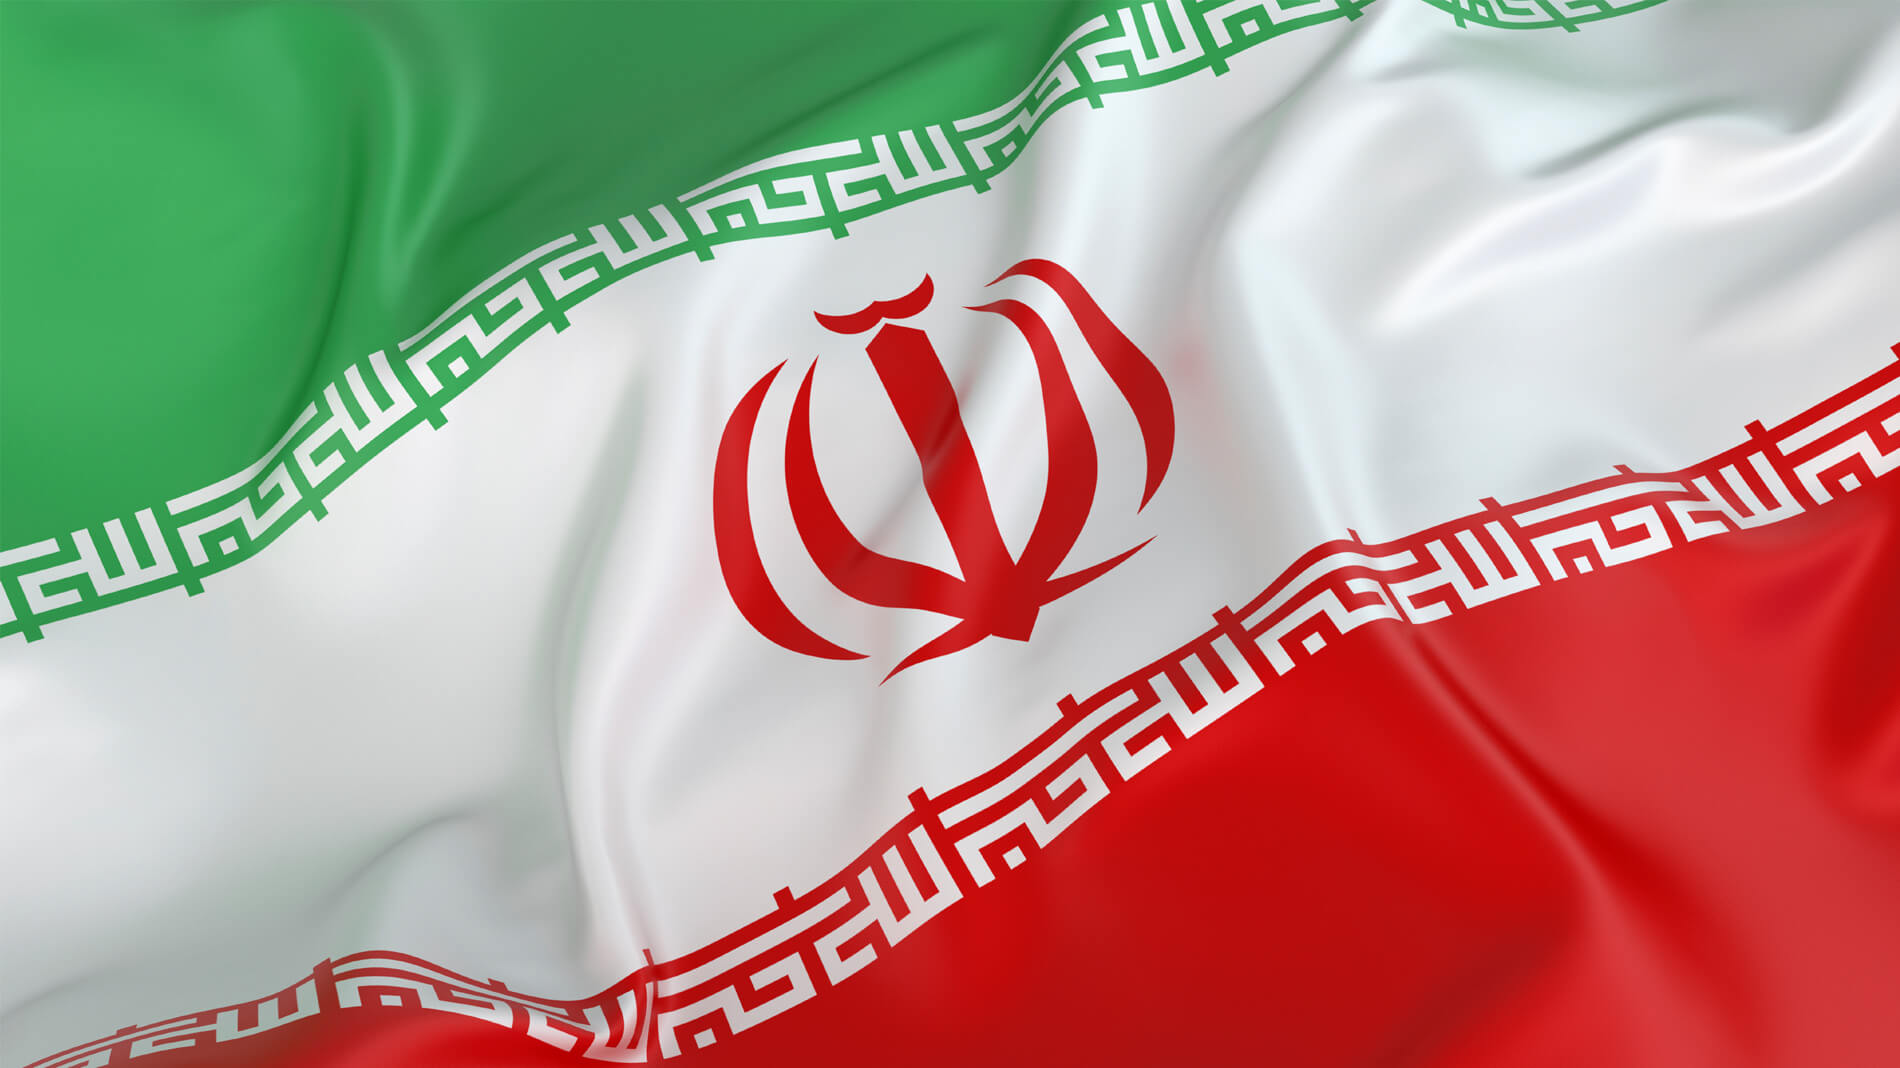 ۲ دشمنِ مردم ایران شناسایی شدند